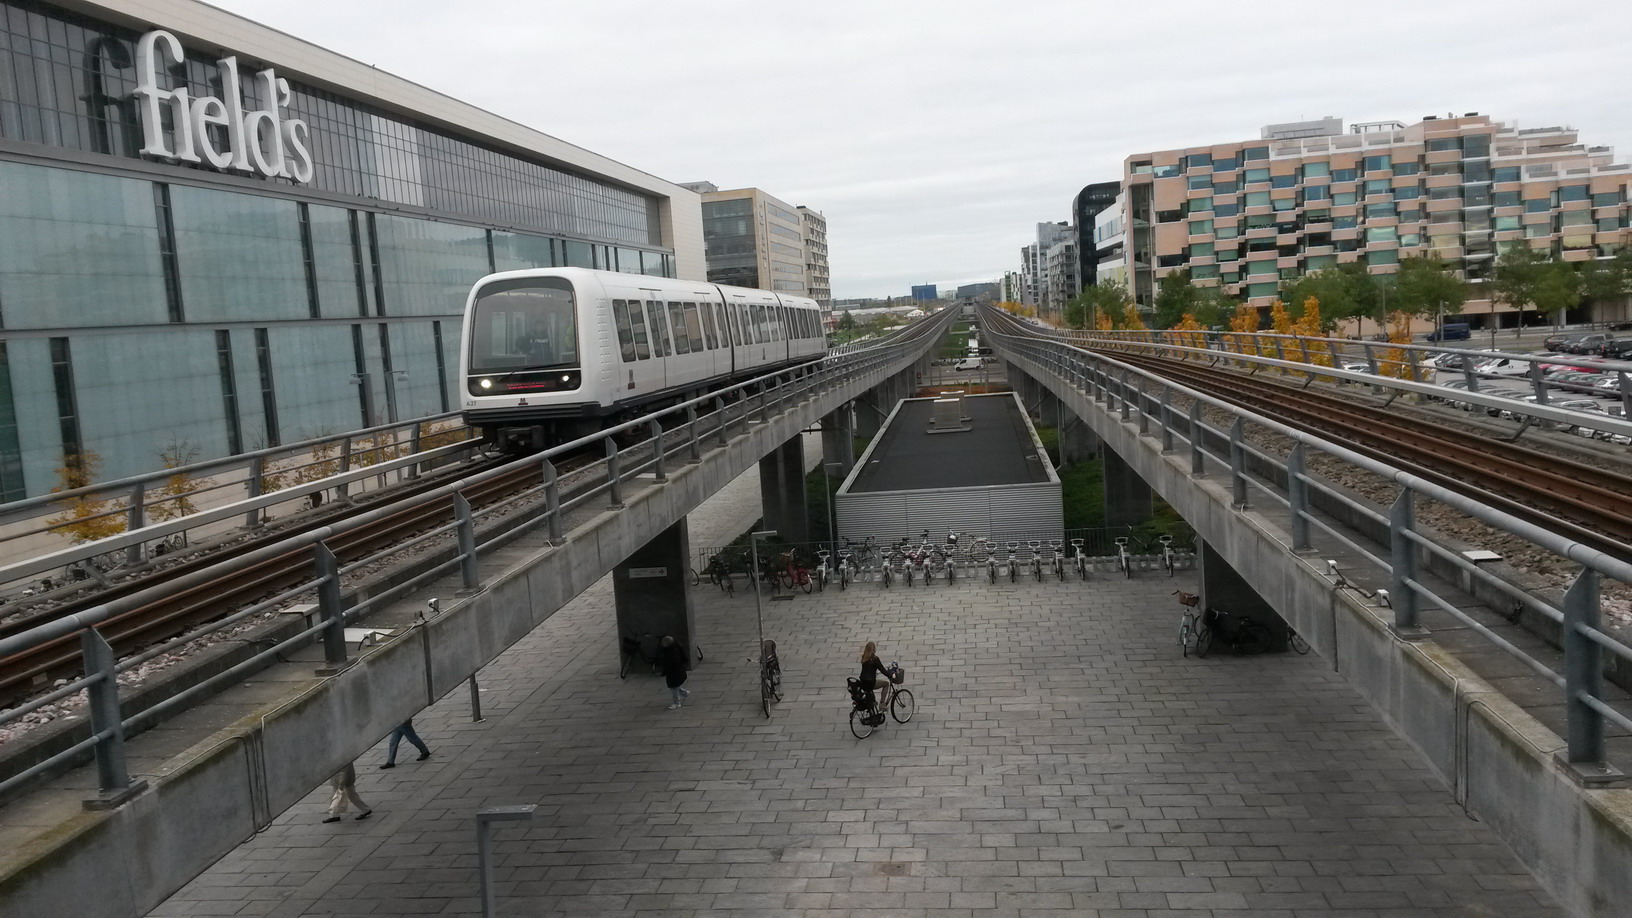 Entlang der überirdischen Metrostrecke sollen im Jahr 2020 20 000 Menschen wohnen und rund 80 000 arbeiten und studieren. Eingekauft wird in Skandinaviens größtem Einkaufszentrum Field's.